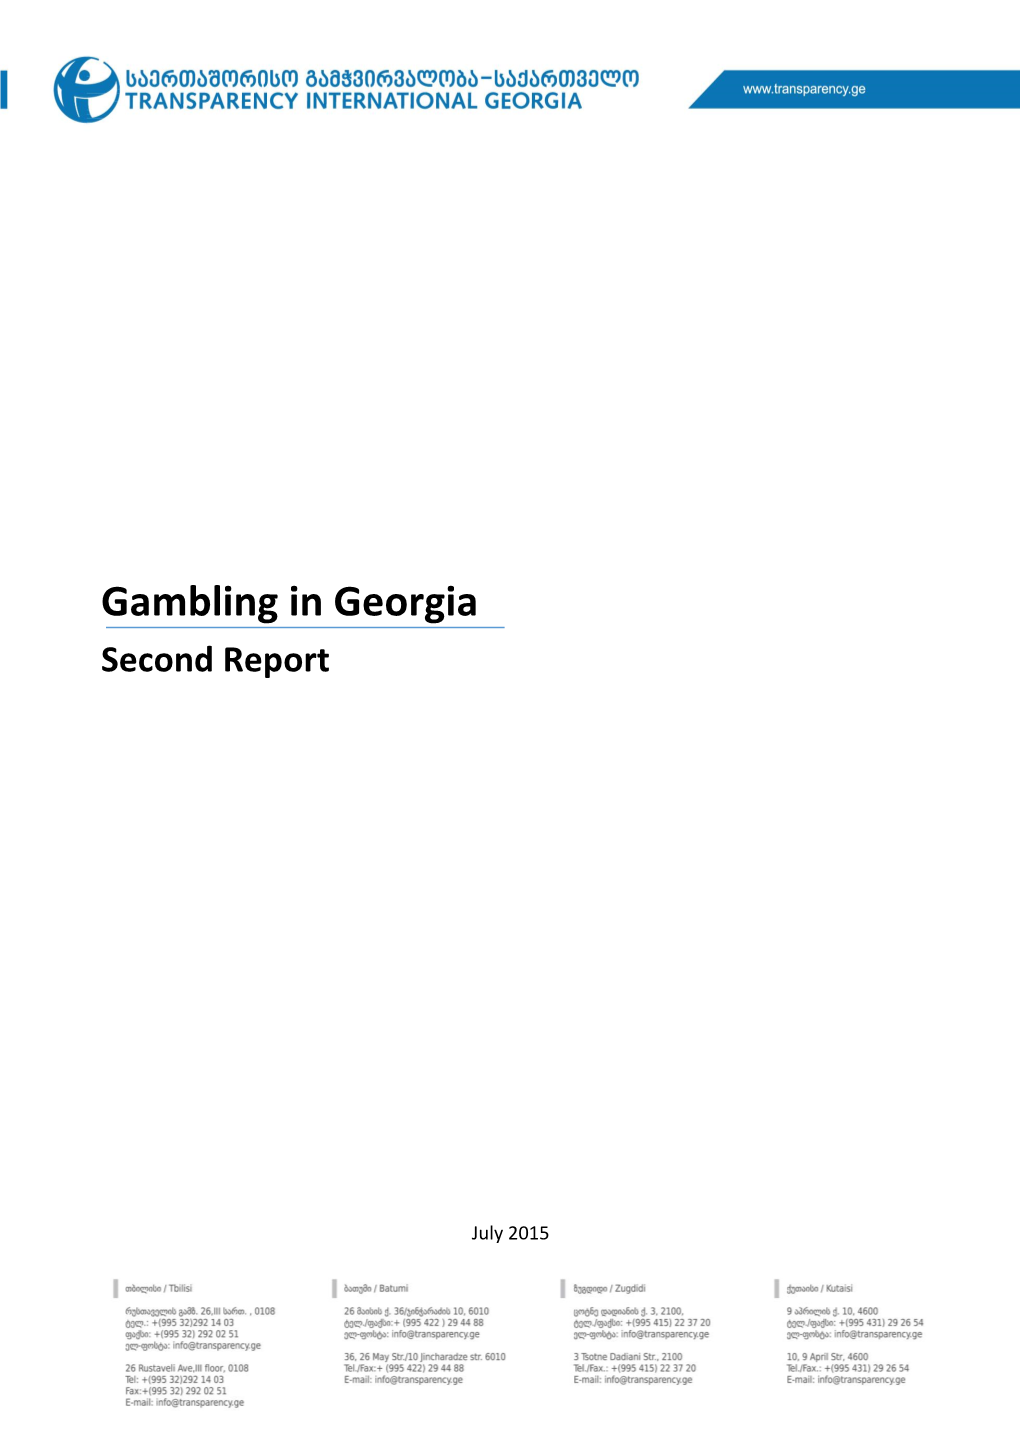 Gambling in Georgia Second Report